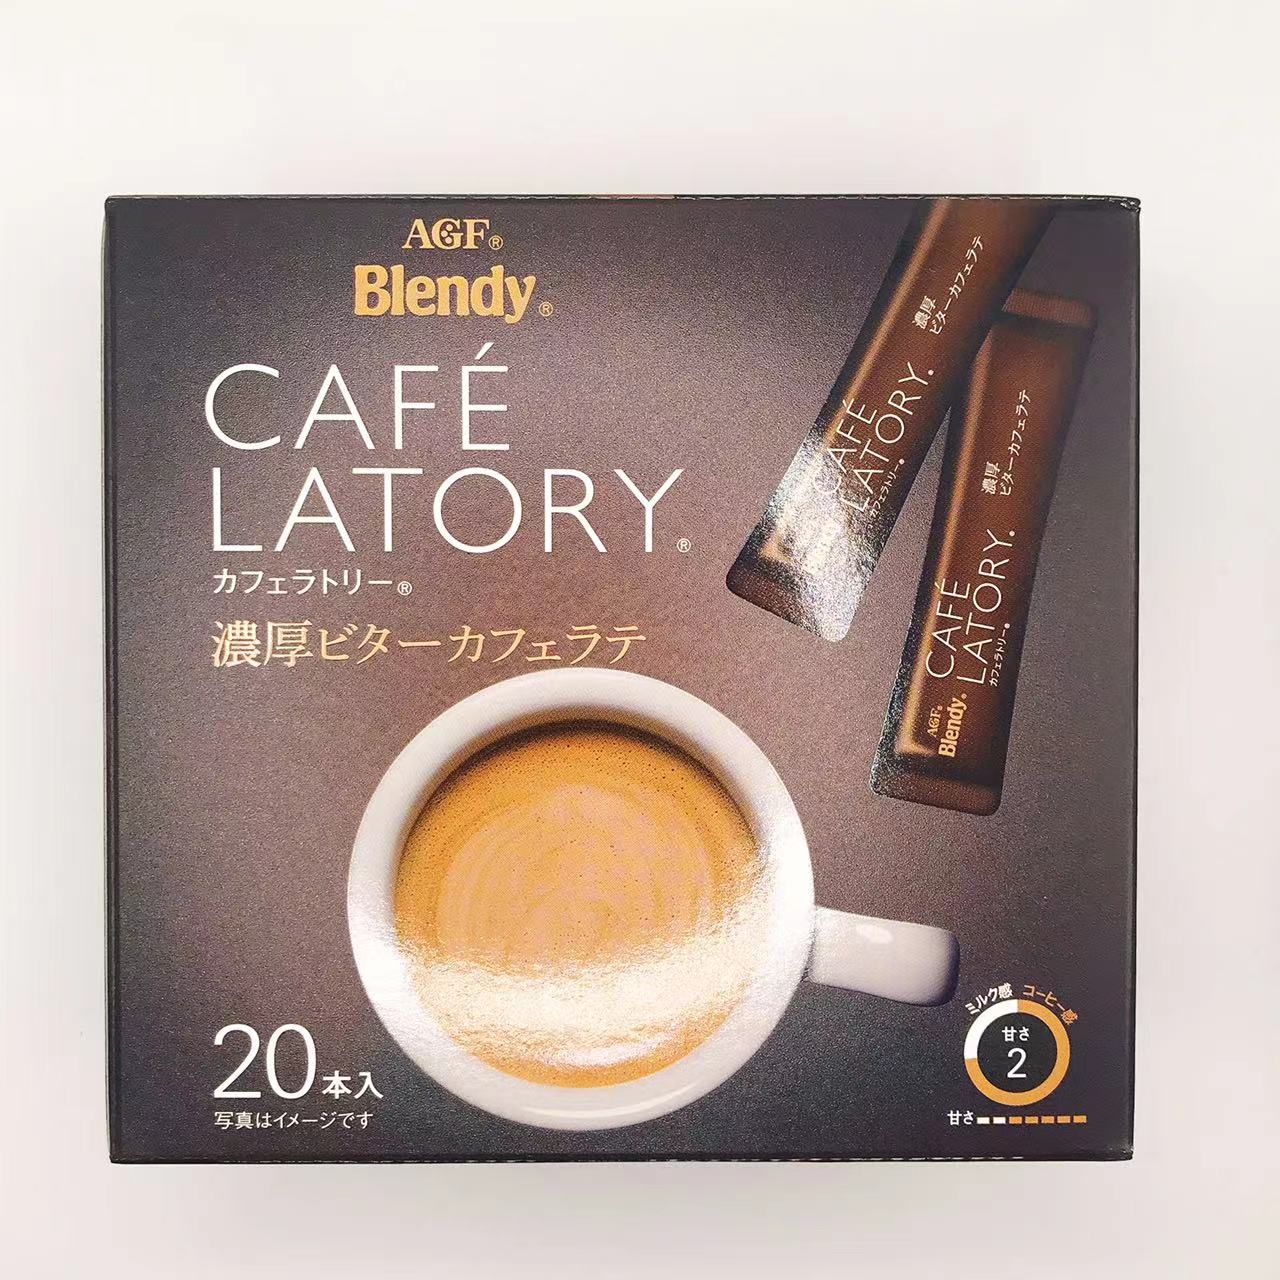 味之素AGF Blendy AGF Brendy Cafe Ratery Stick Coffee豐富的苦咖啡吧（9.1g * 20件）